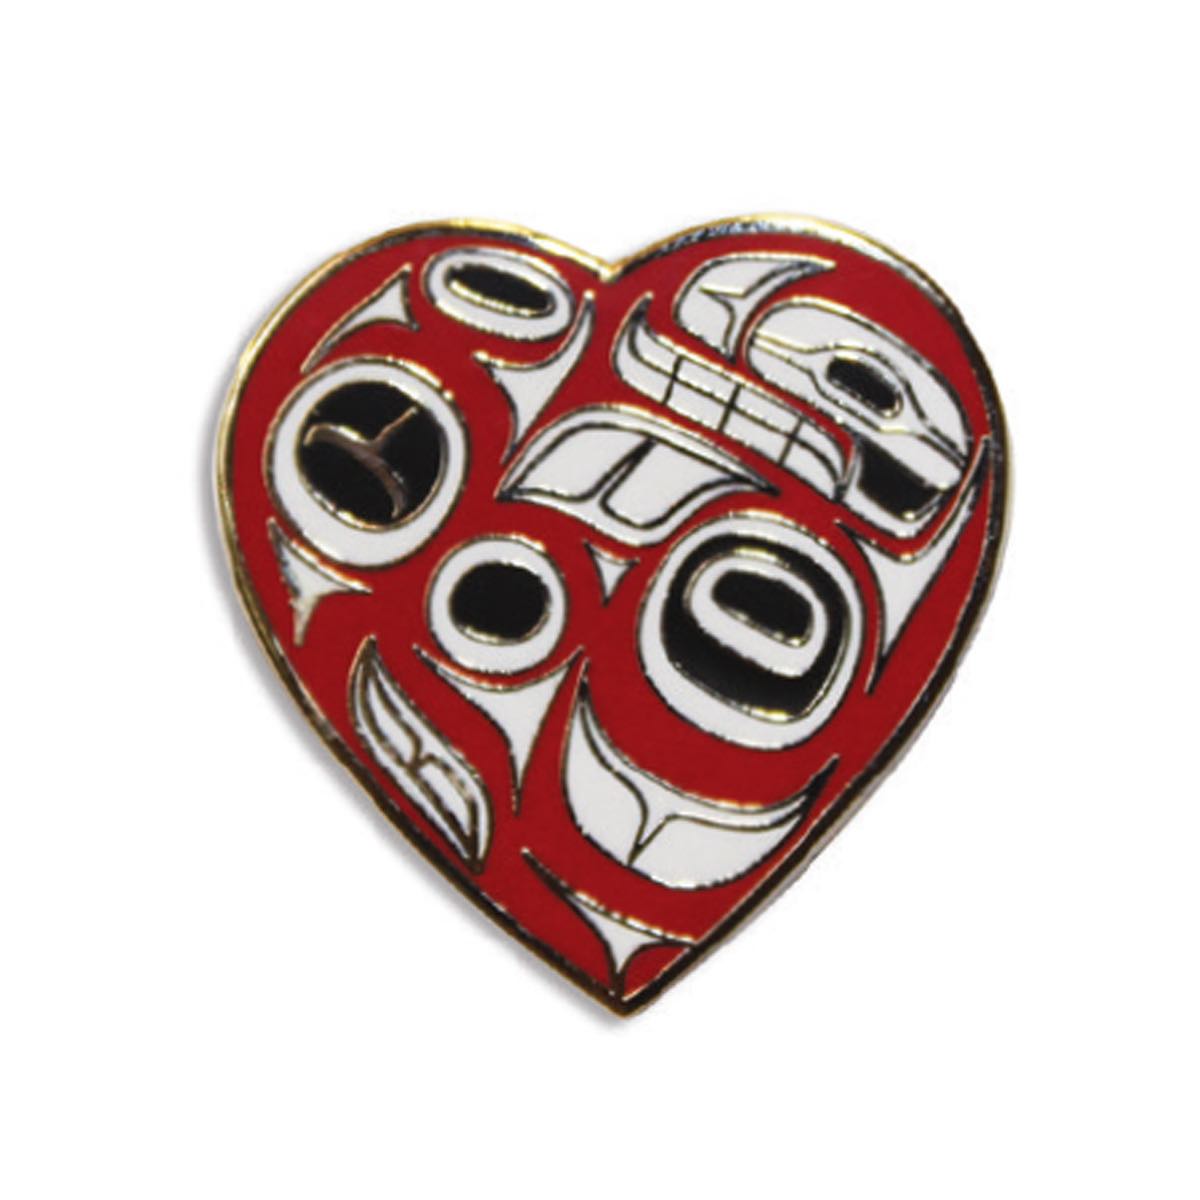 Enamel Pin Ben Houstie Heart - Enamel Pin Ben Houstie Heart -  - House of Himwitsa Native Art Gallery and Gifts